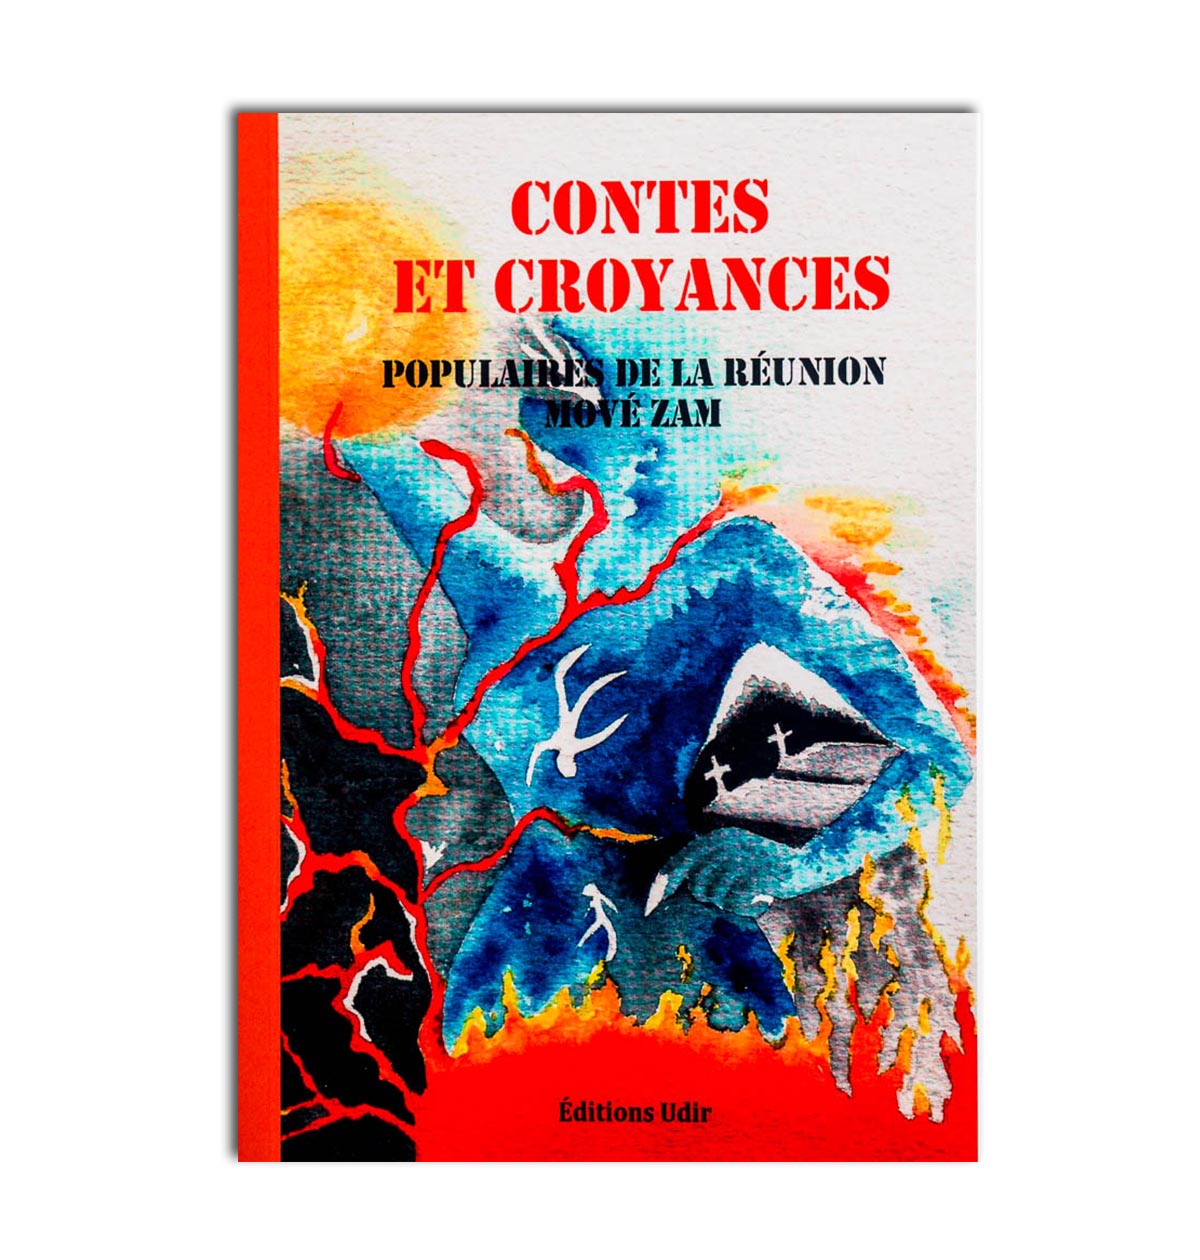 Contes et croyances Populaires de la Réunion mové zam